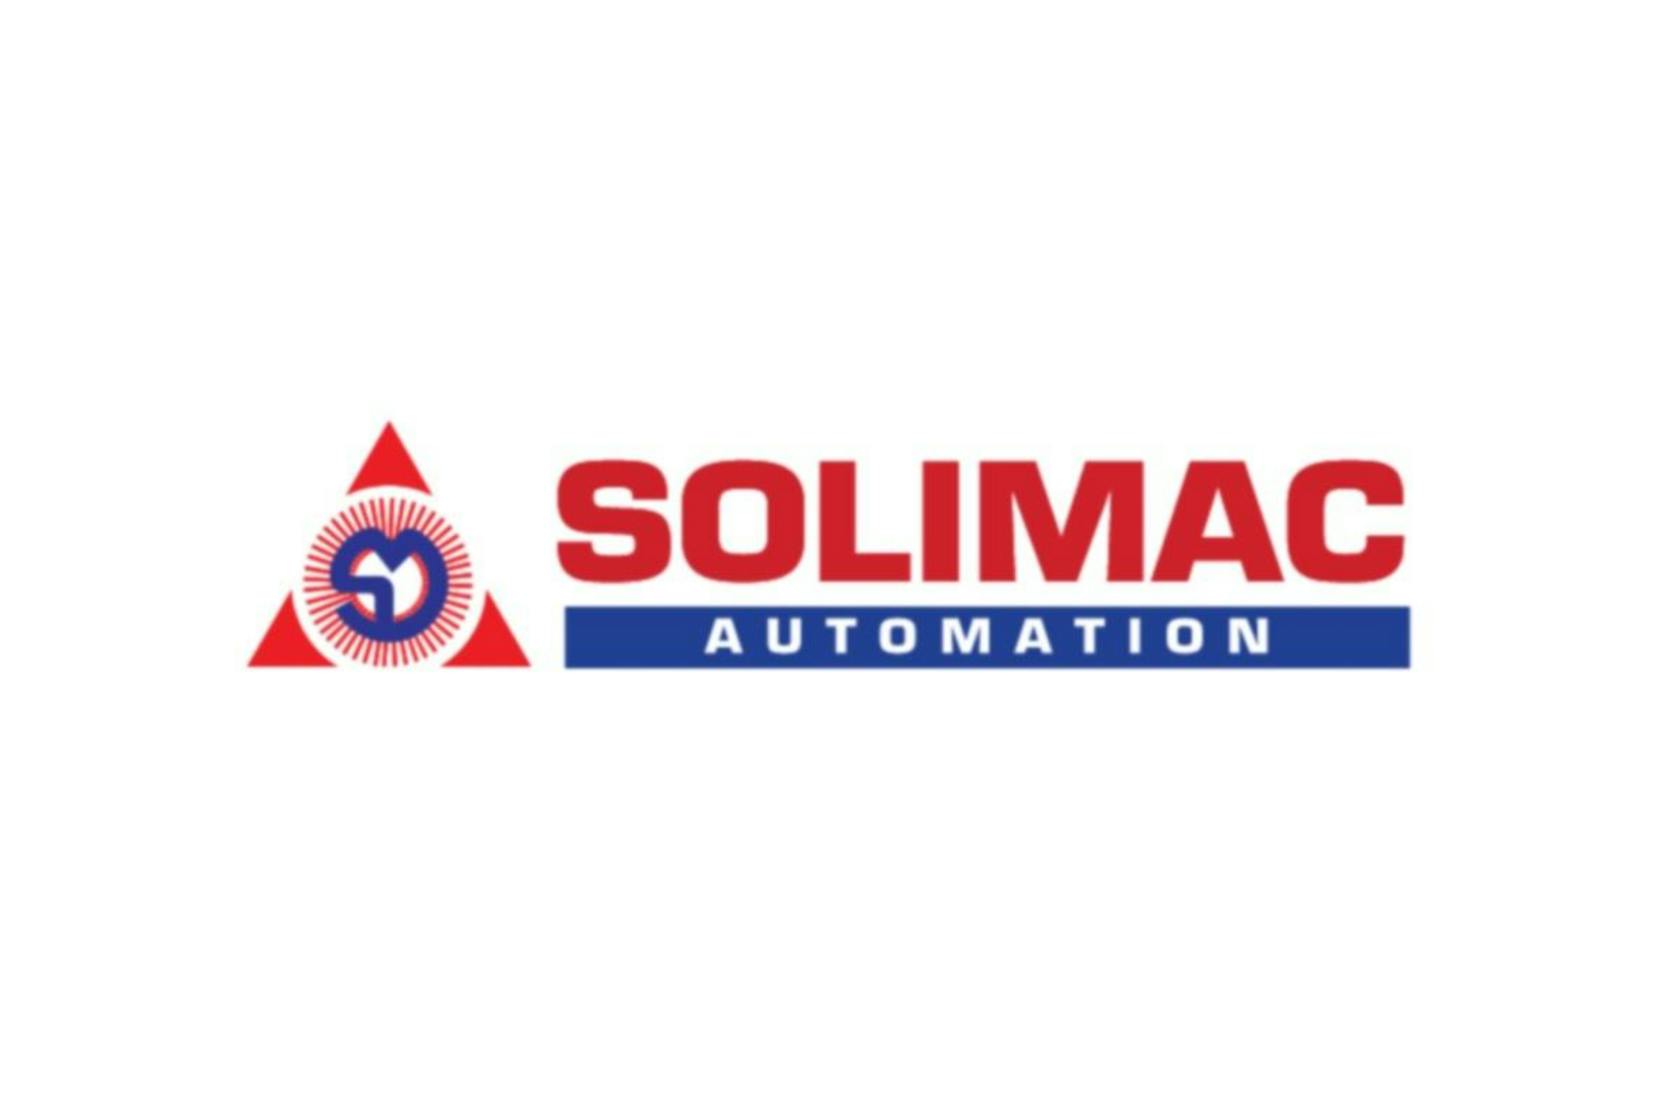 SOLIMAC AUTOMATION, Bangkok